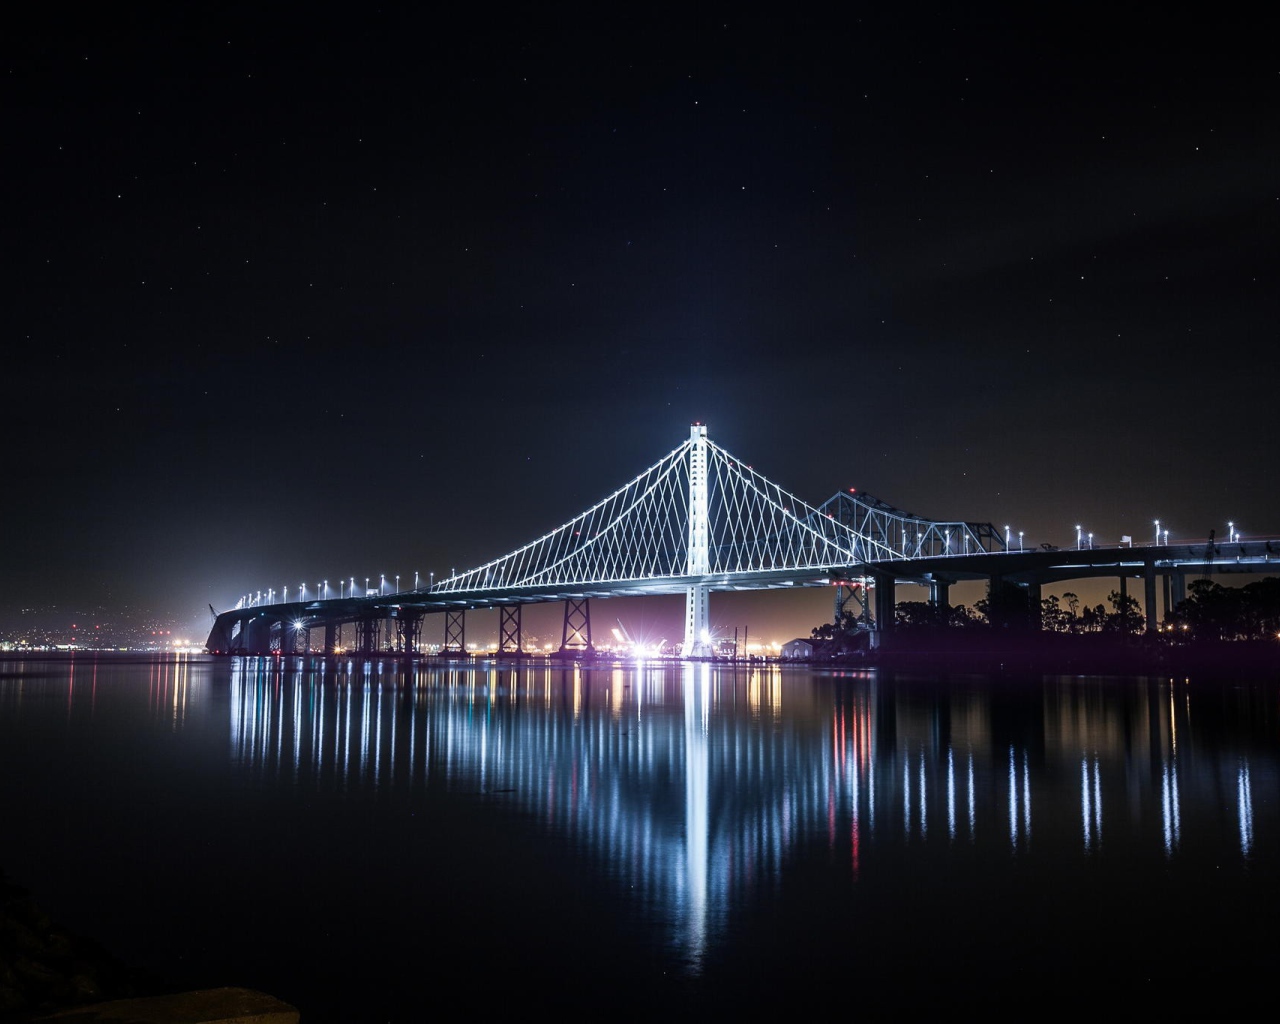 Ночной мост в Сан-Франциско, Калифорния